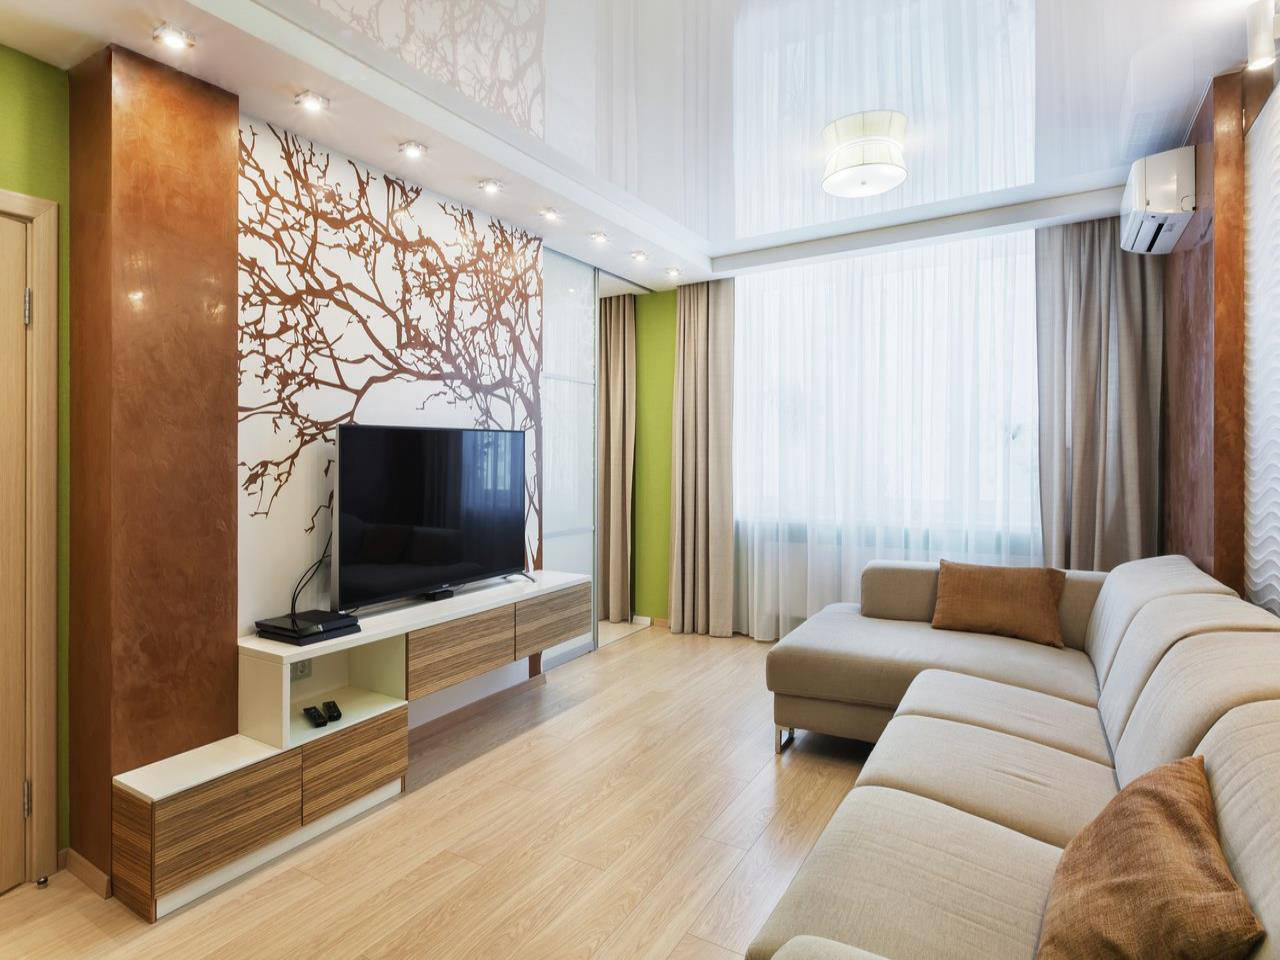 Дизайн интерьера гостиной: выбор стиля, цветовой гаммы и мебели